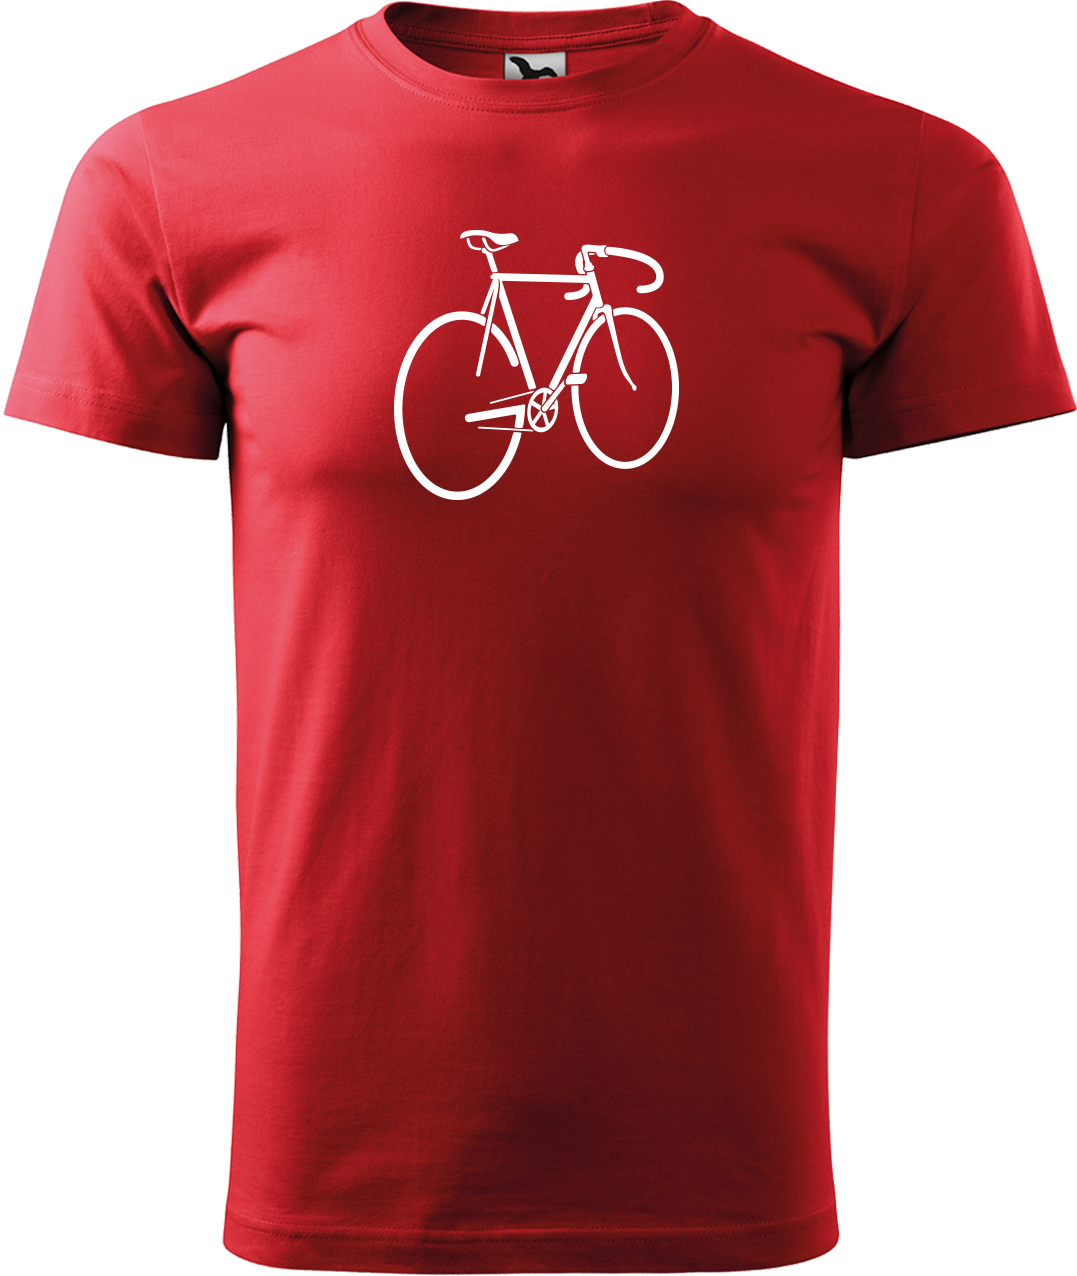 Pánské tričko s kolem - Pánské kolo Velikost: L, Barva: Červená (07)